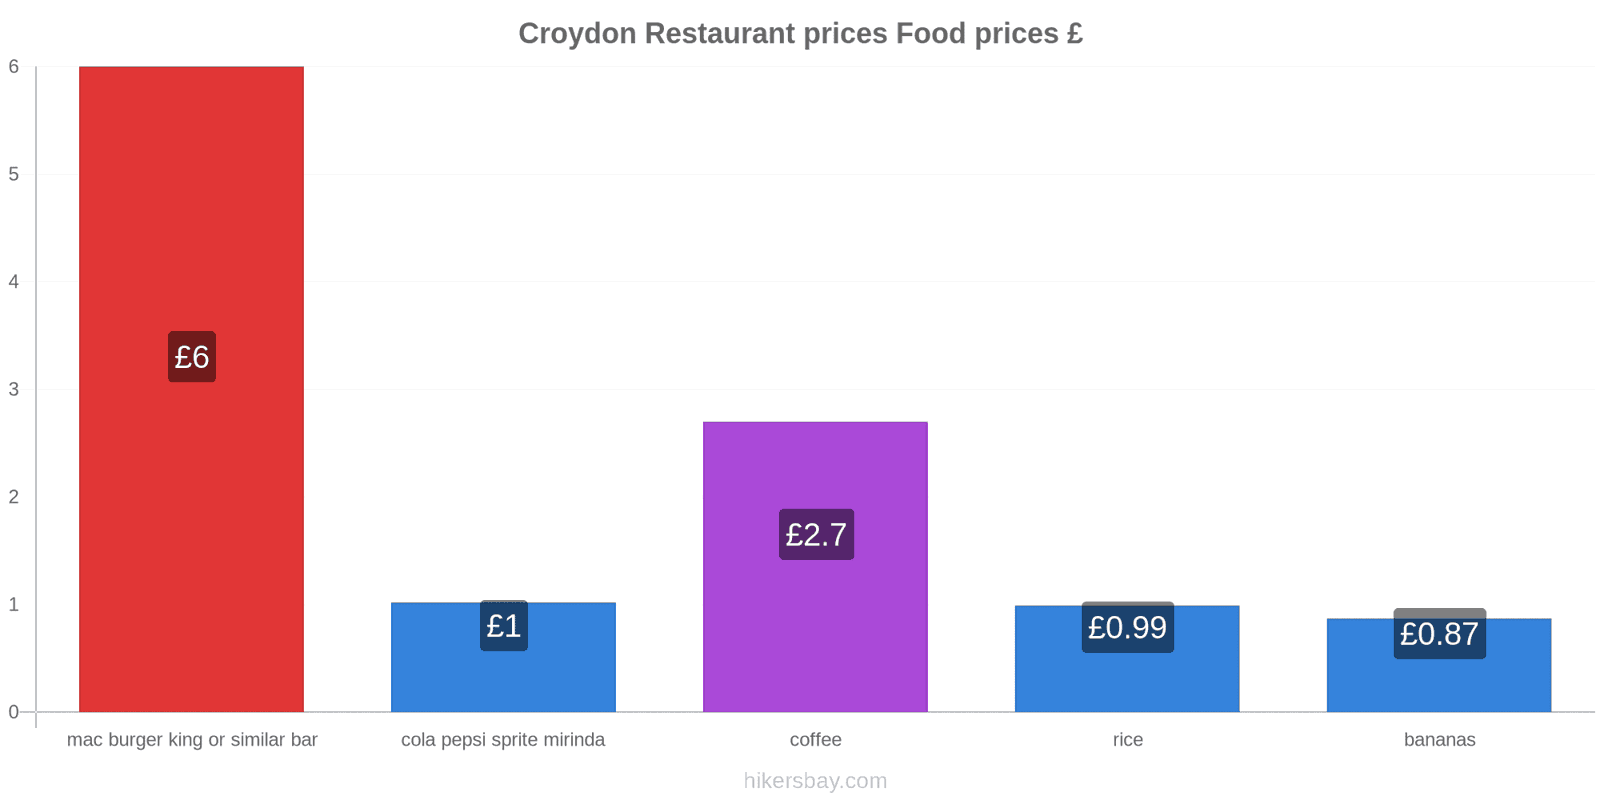 Croydon price changes hikersbay.com